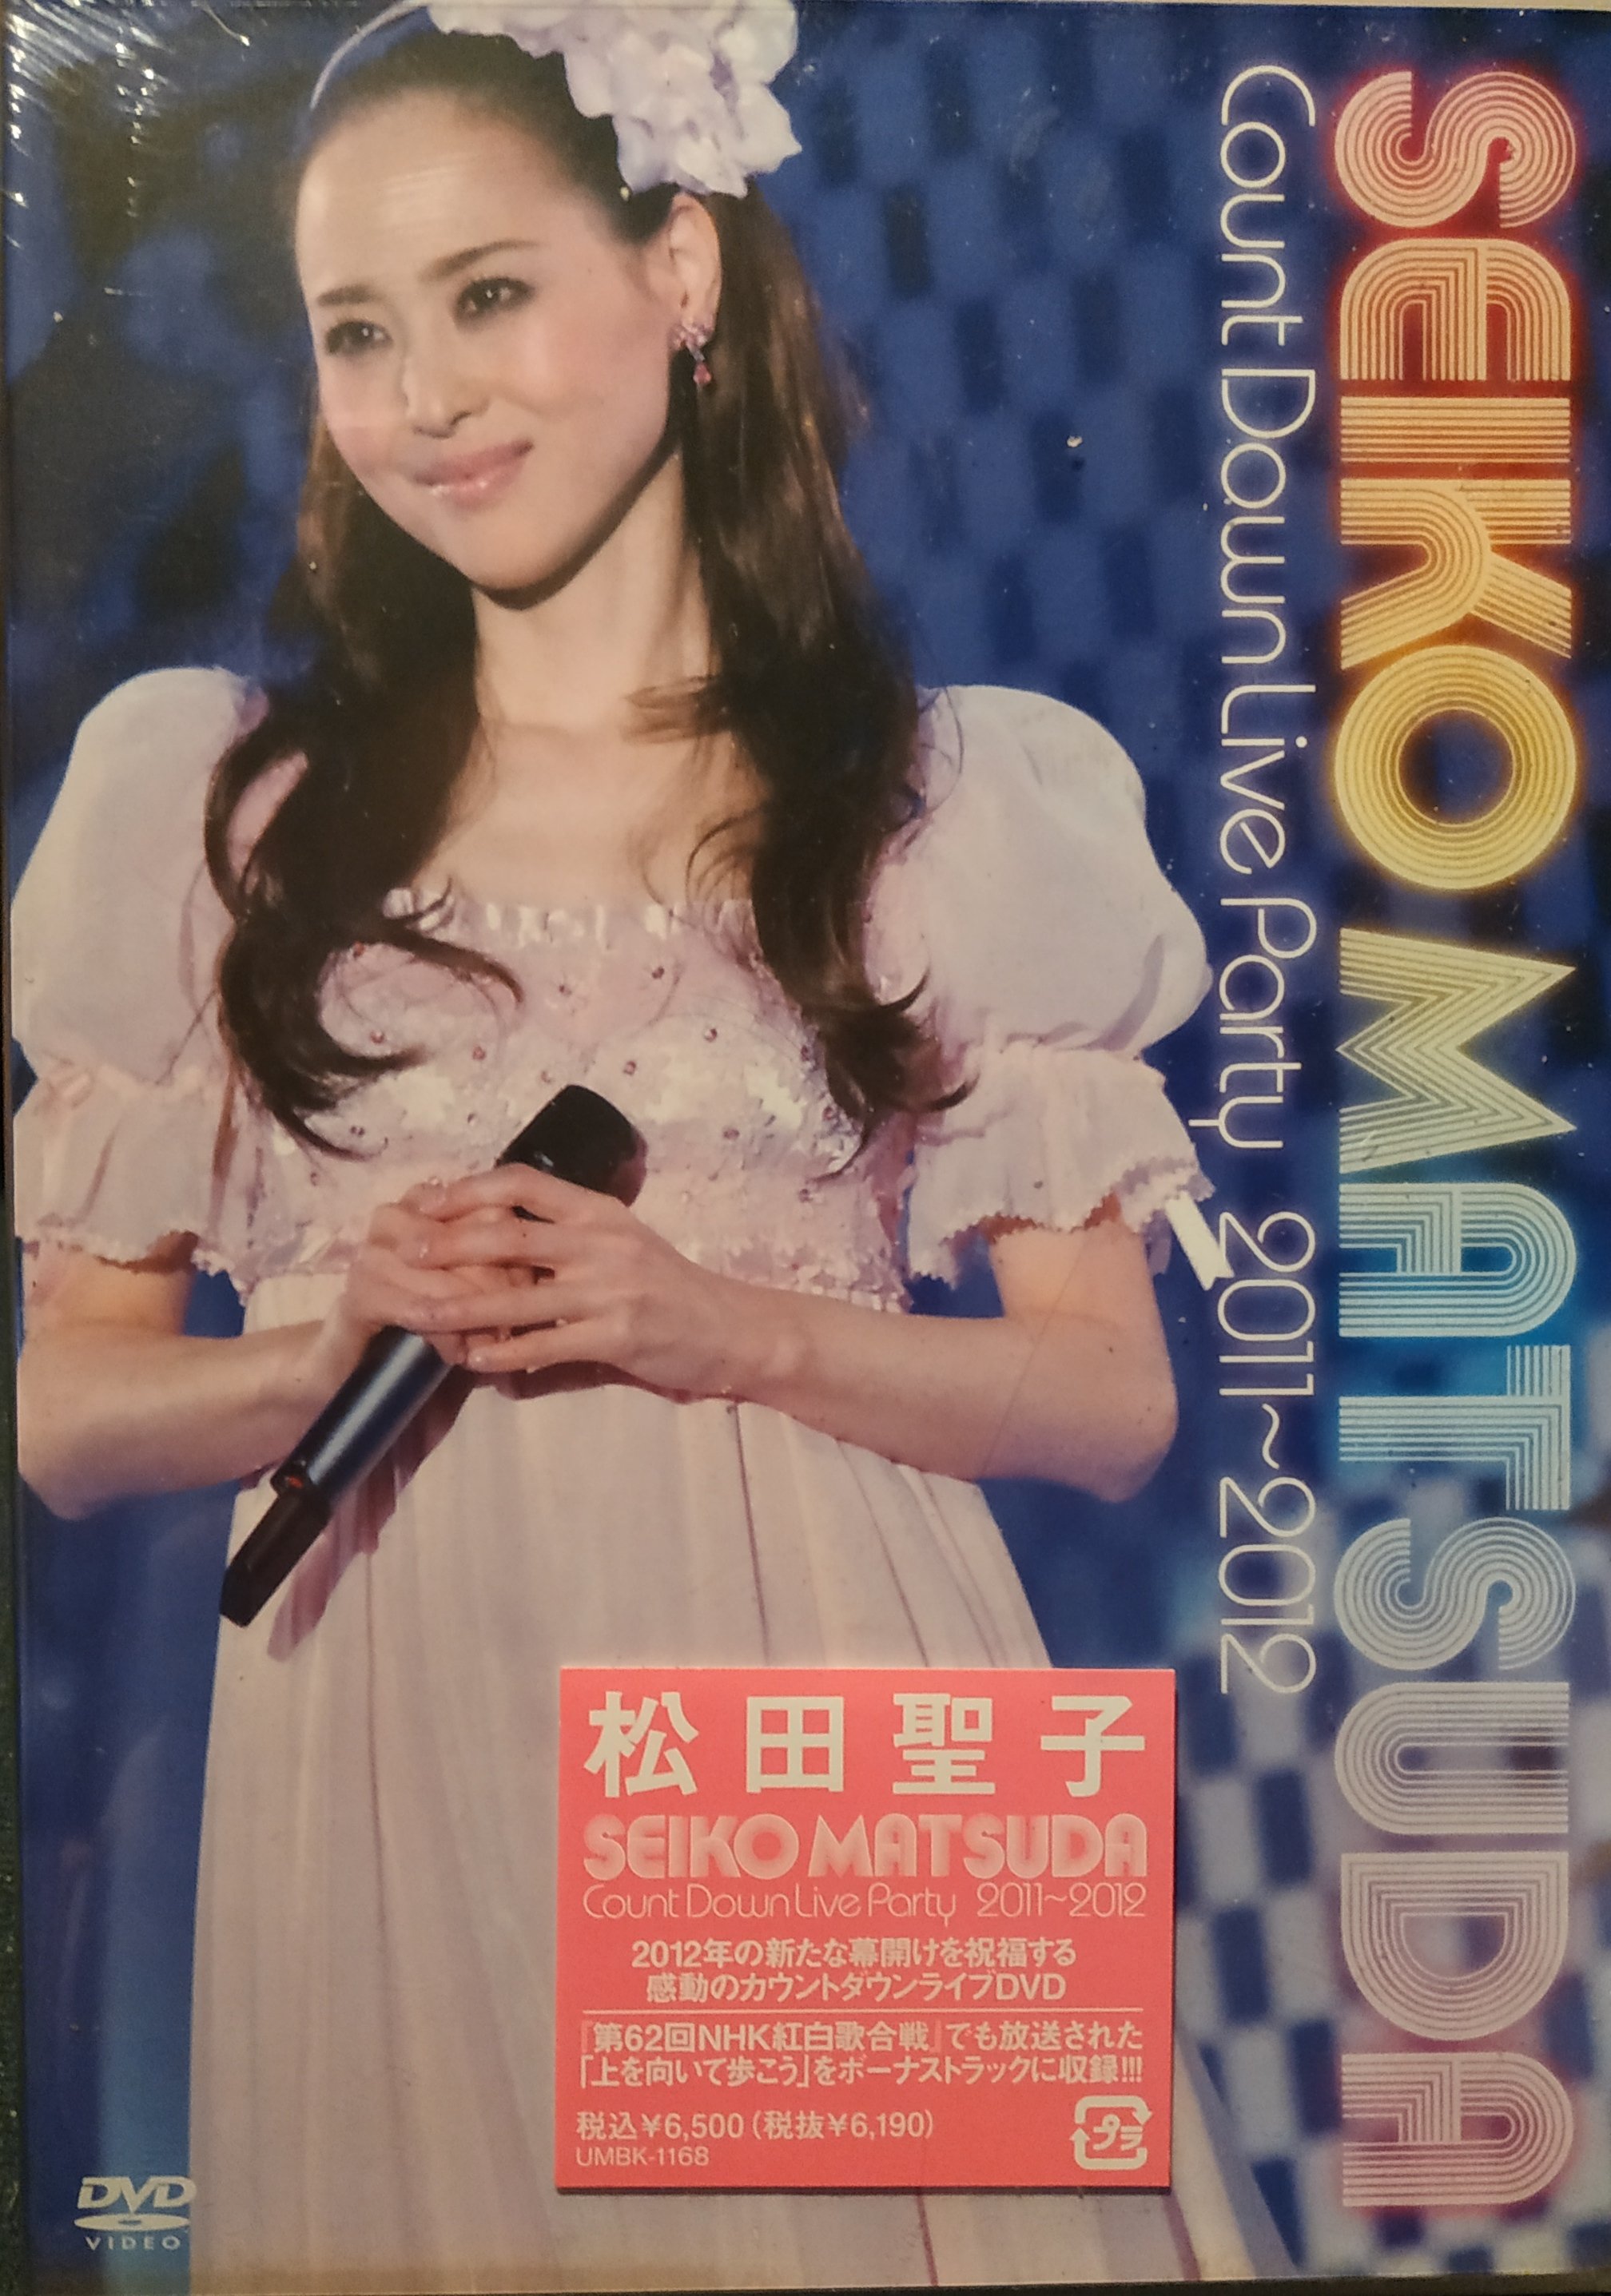 【新入荷品】松田聖子 カウントダウン 2010-2011 DVD 初回限定盤 神田沙也加 ミュージック